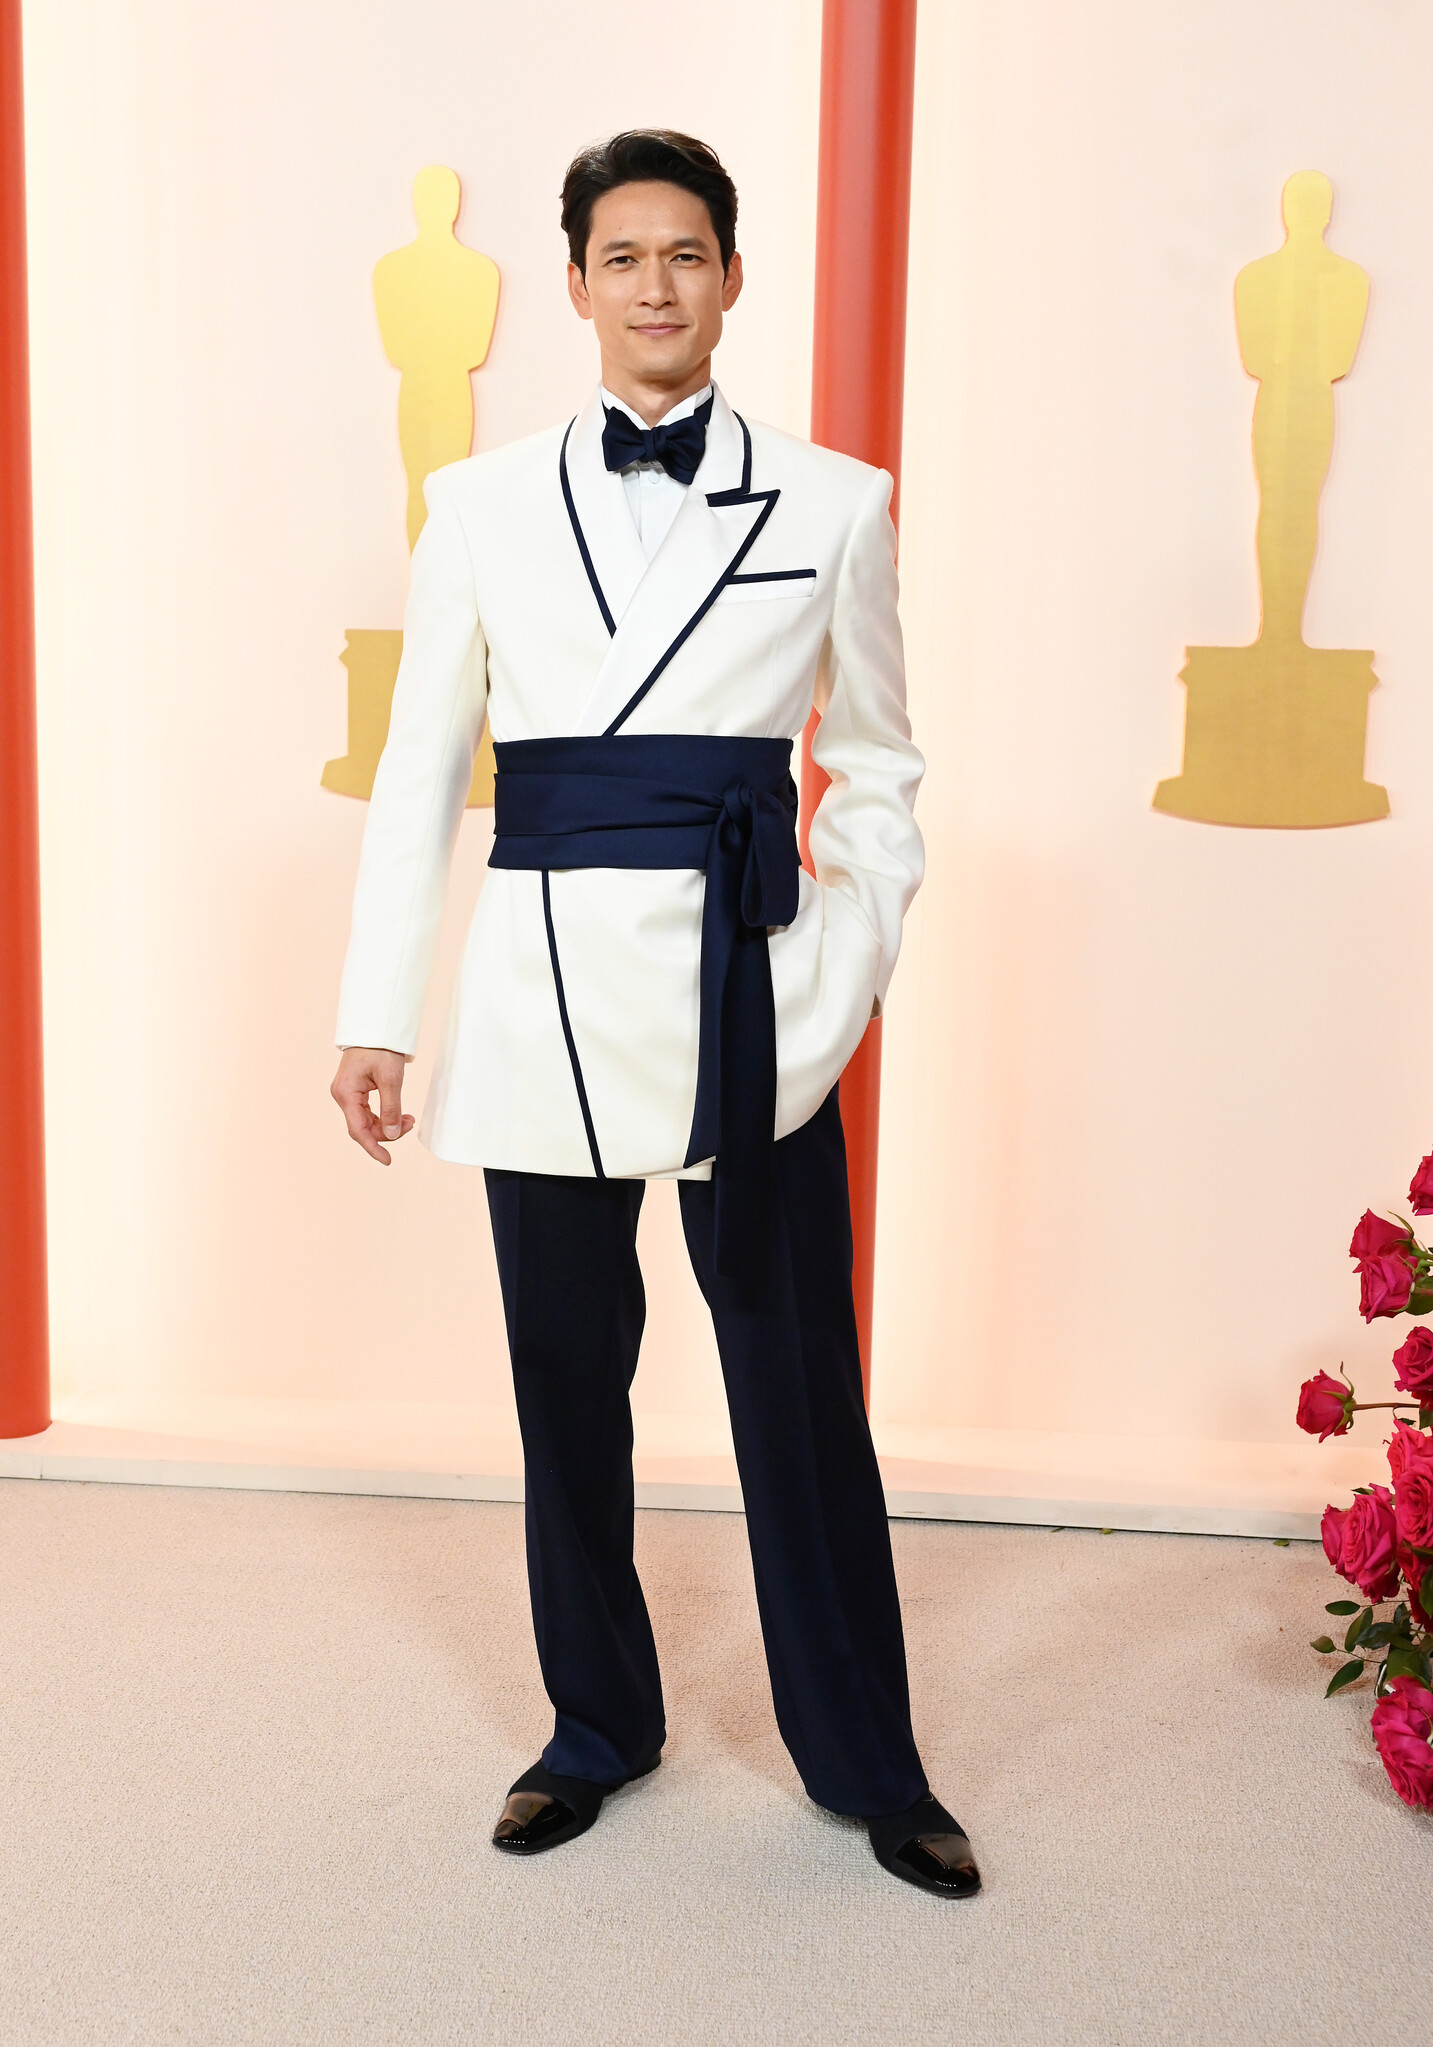 第95回アカデミー賞にて、俳優 Harry Shum Jr. がADEAMのオーダーメイドタキシードでレッドカーペットに登場!